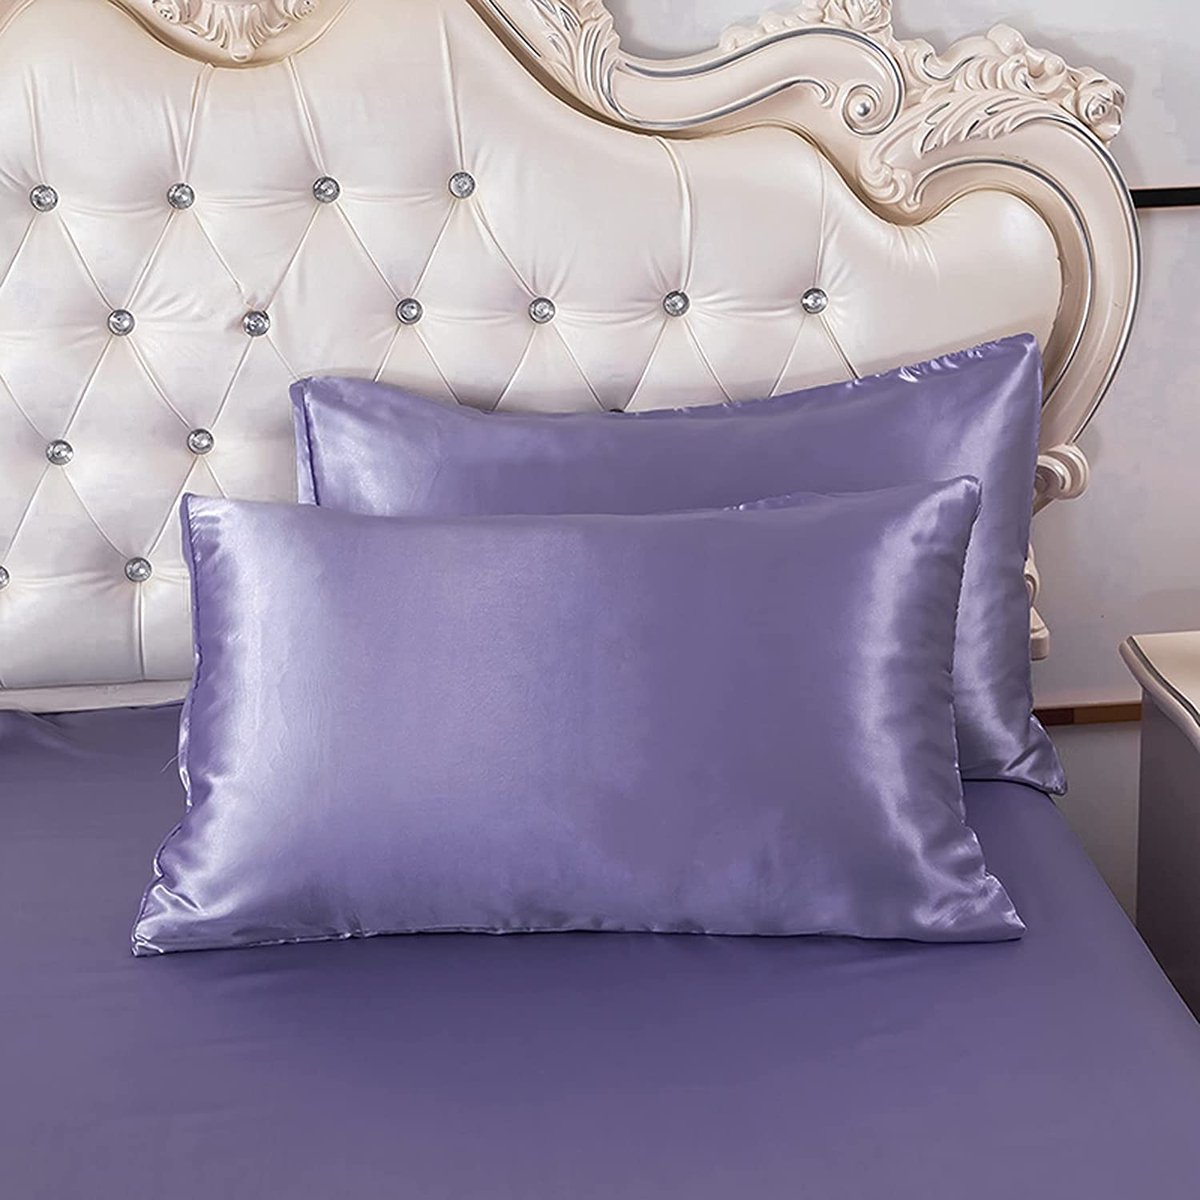 HYSENM Satijnen beddengoed 200 x 200 cm zijde luxe dekbedovertrek set microvezel dekbedovertrek + 2 kussenslopen 50 x 70 cm eenkleurig glad comfortabel elegant, violet